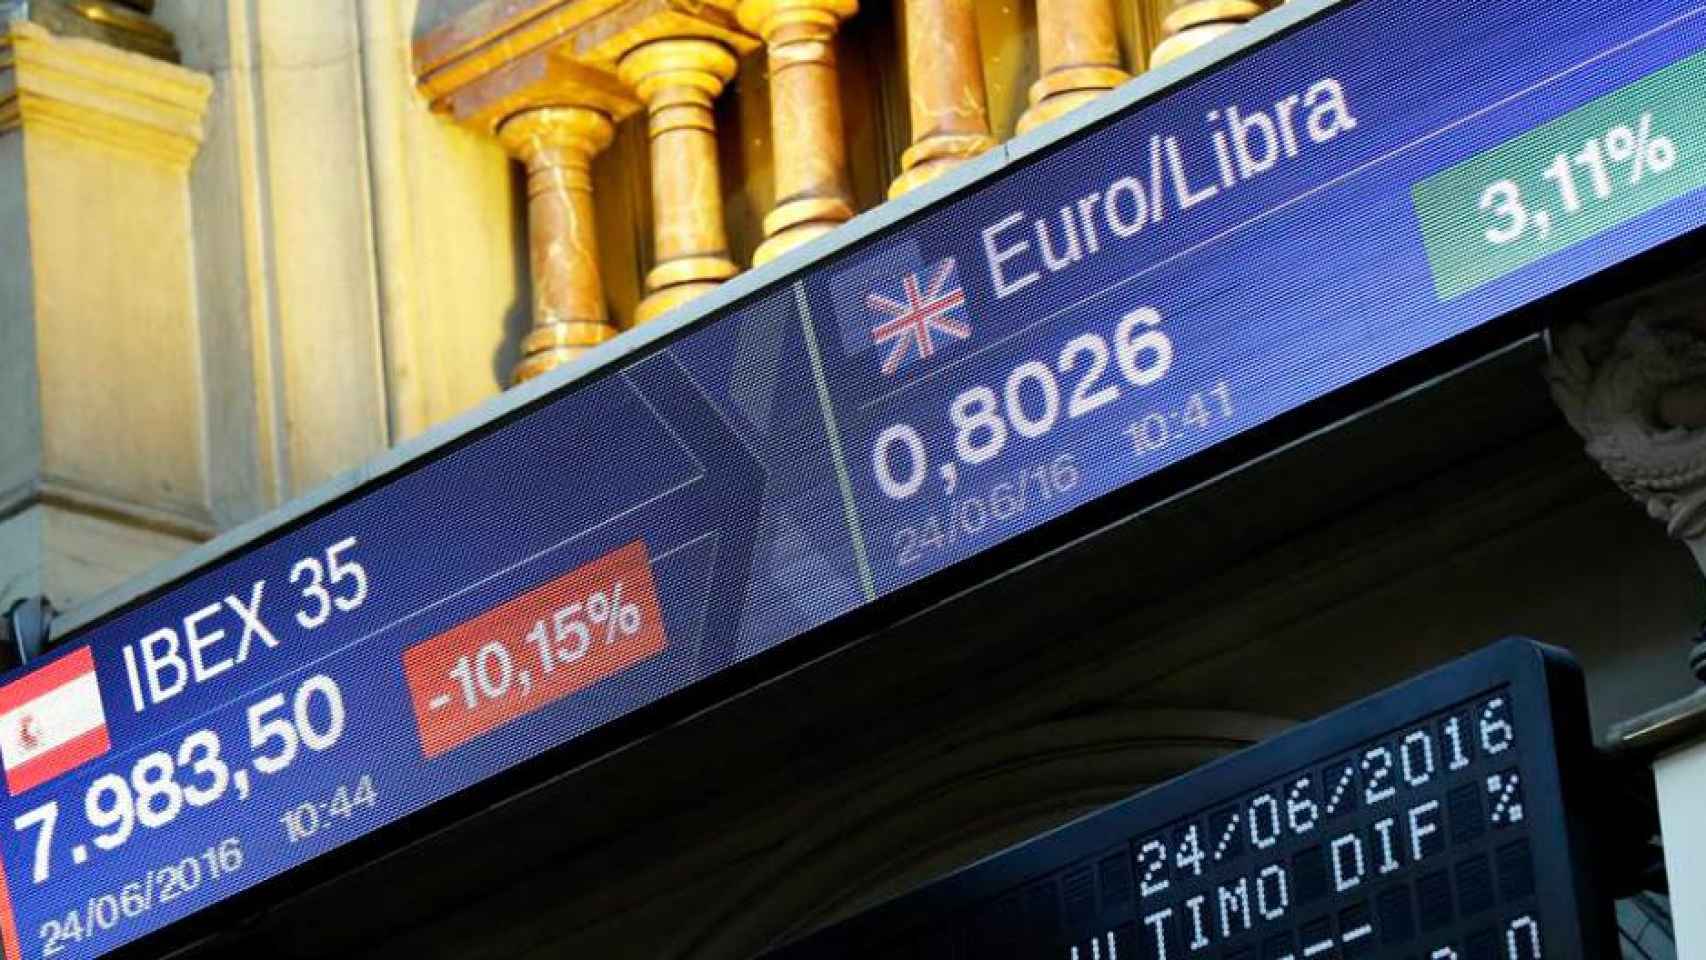 Panel de bolsa con los resultados del Ibex35 y el tipo de cambio entre el euro y la libra de Reino Unido